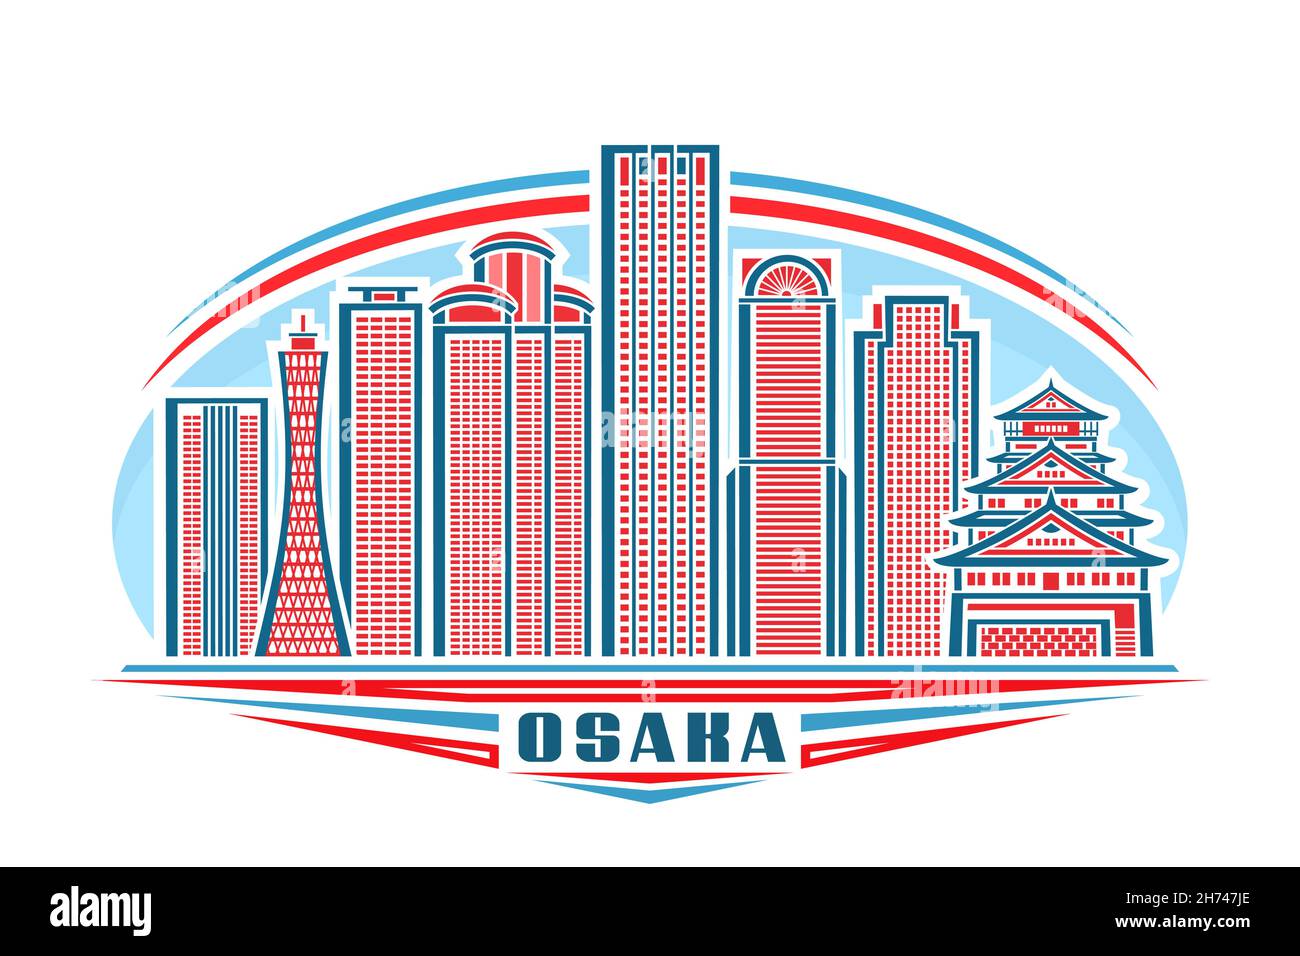 Illustrazione vettoriale di Osaka, logo orizzontale con design lineare famoso paesaggio cittadino di osaka su sfondo cielo diurno, concetto artistico urbano asiatico con deco Illustrazione Vettoriale